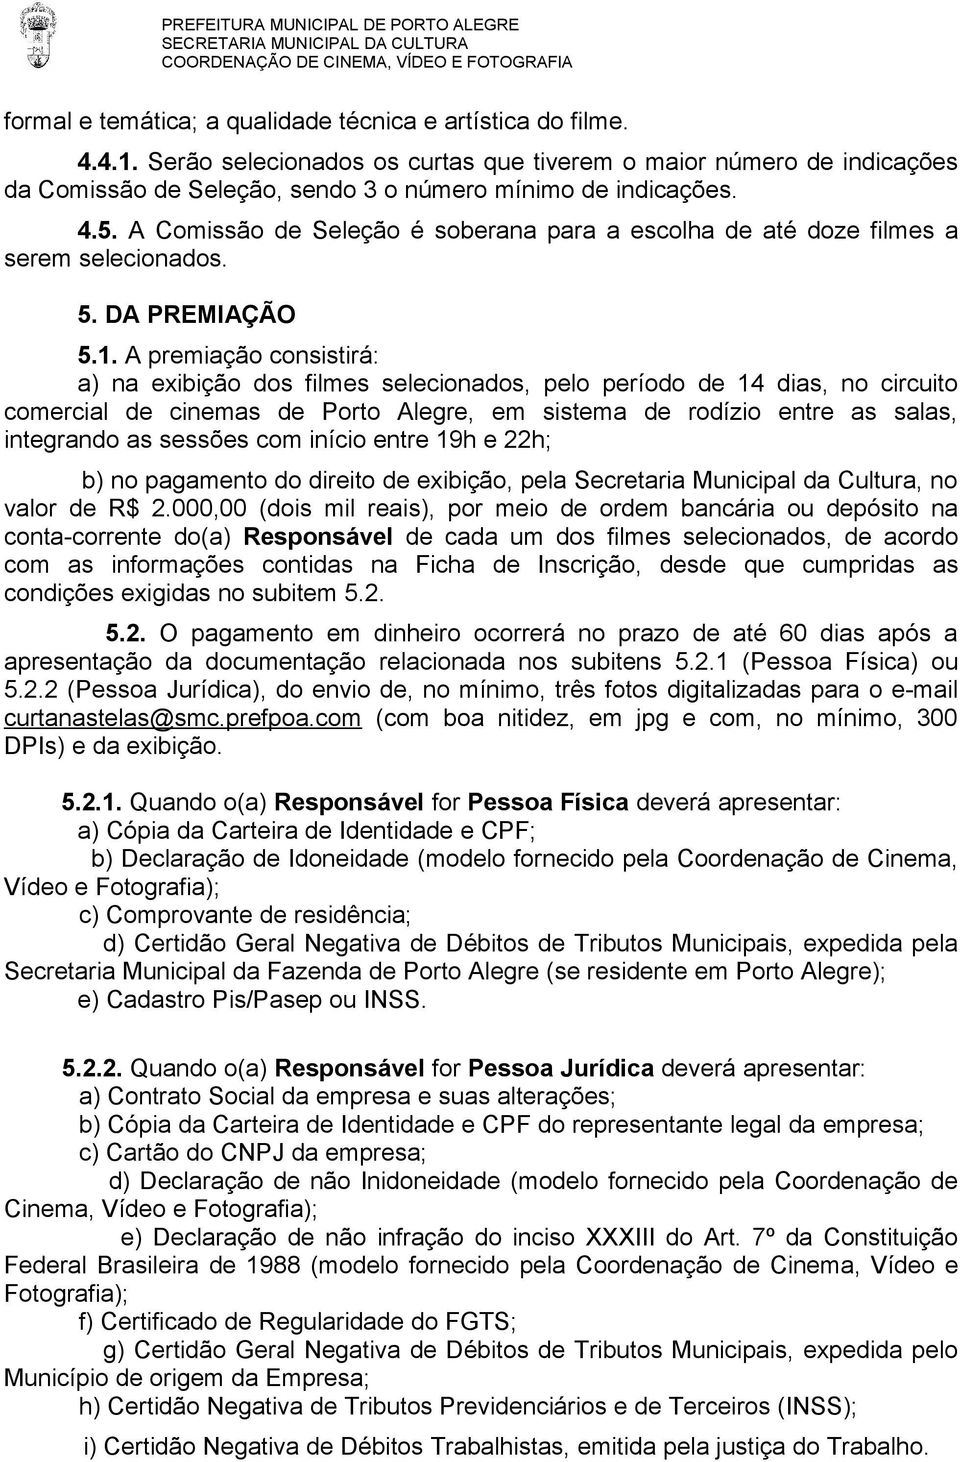 A premiação consistirá: a) na exibição dos filmes selecionados, pelo período de 14 dias, no circuito comercial de cinemas de Porto Alegre, em sistema de rodízio entre as salas, integrando as sessões